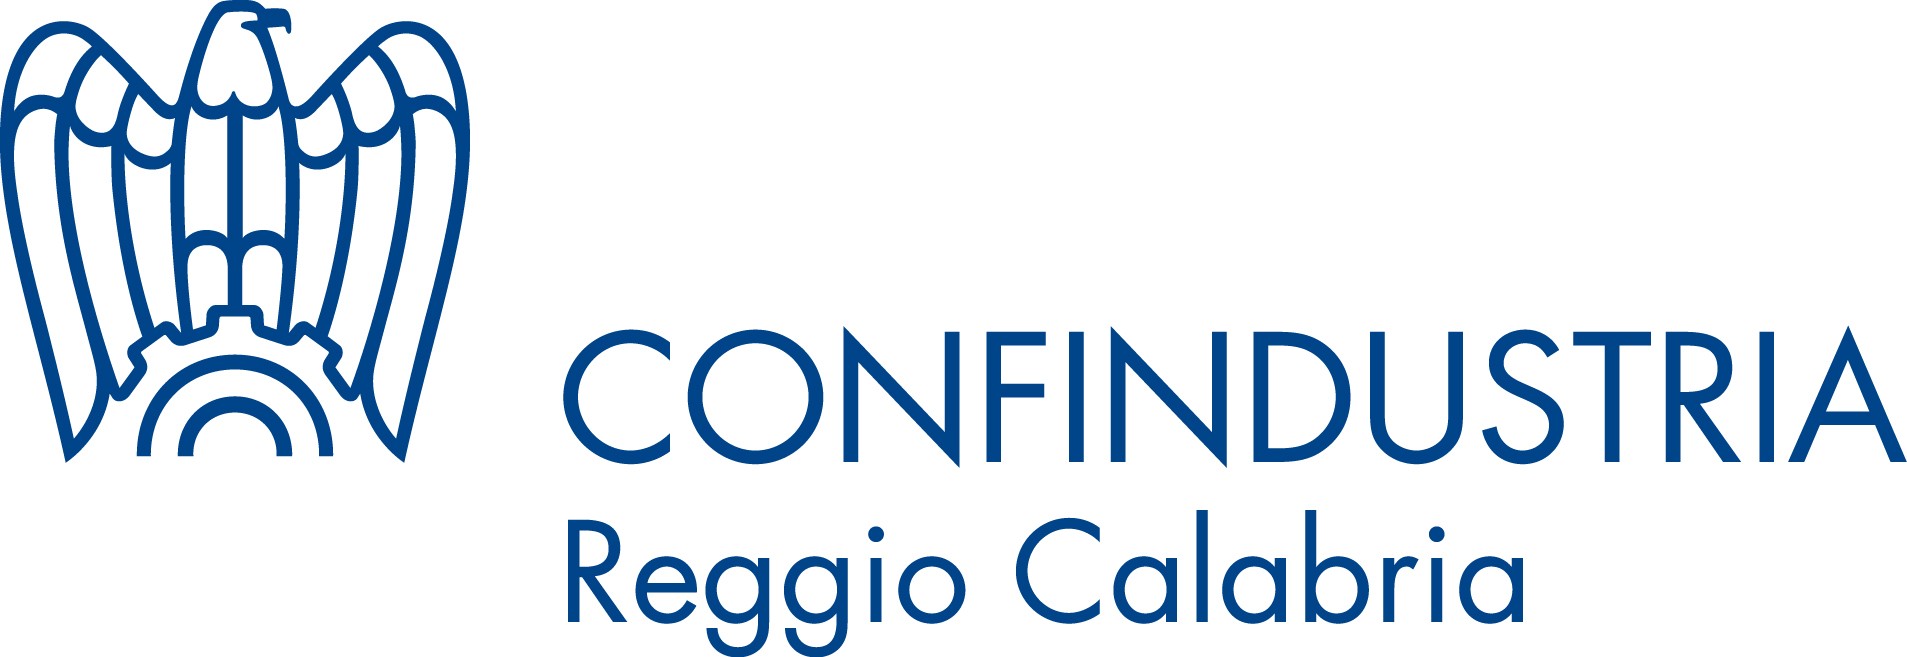 Confindustria Reggio Calabria